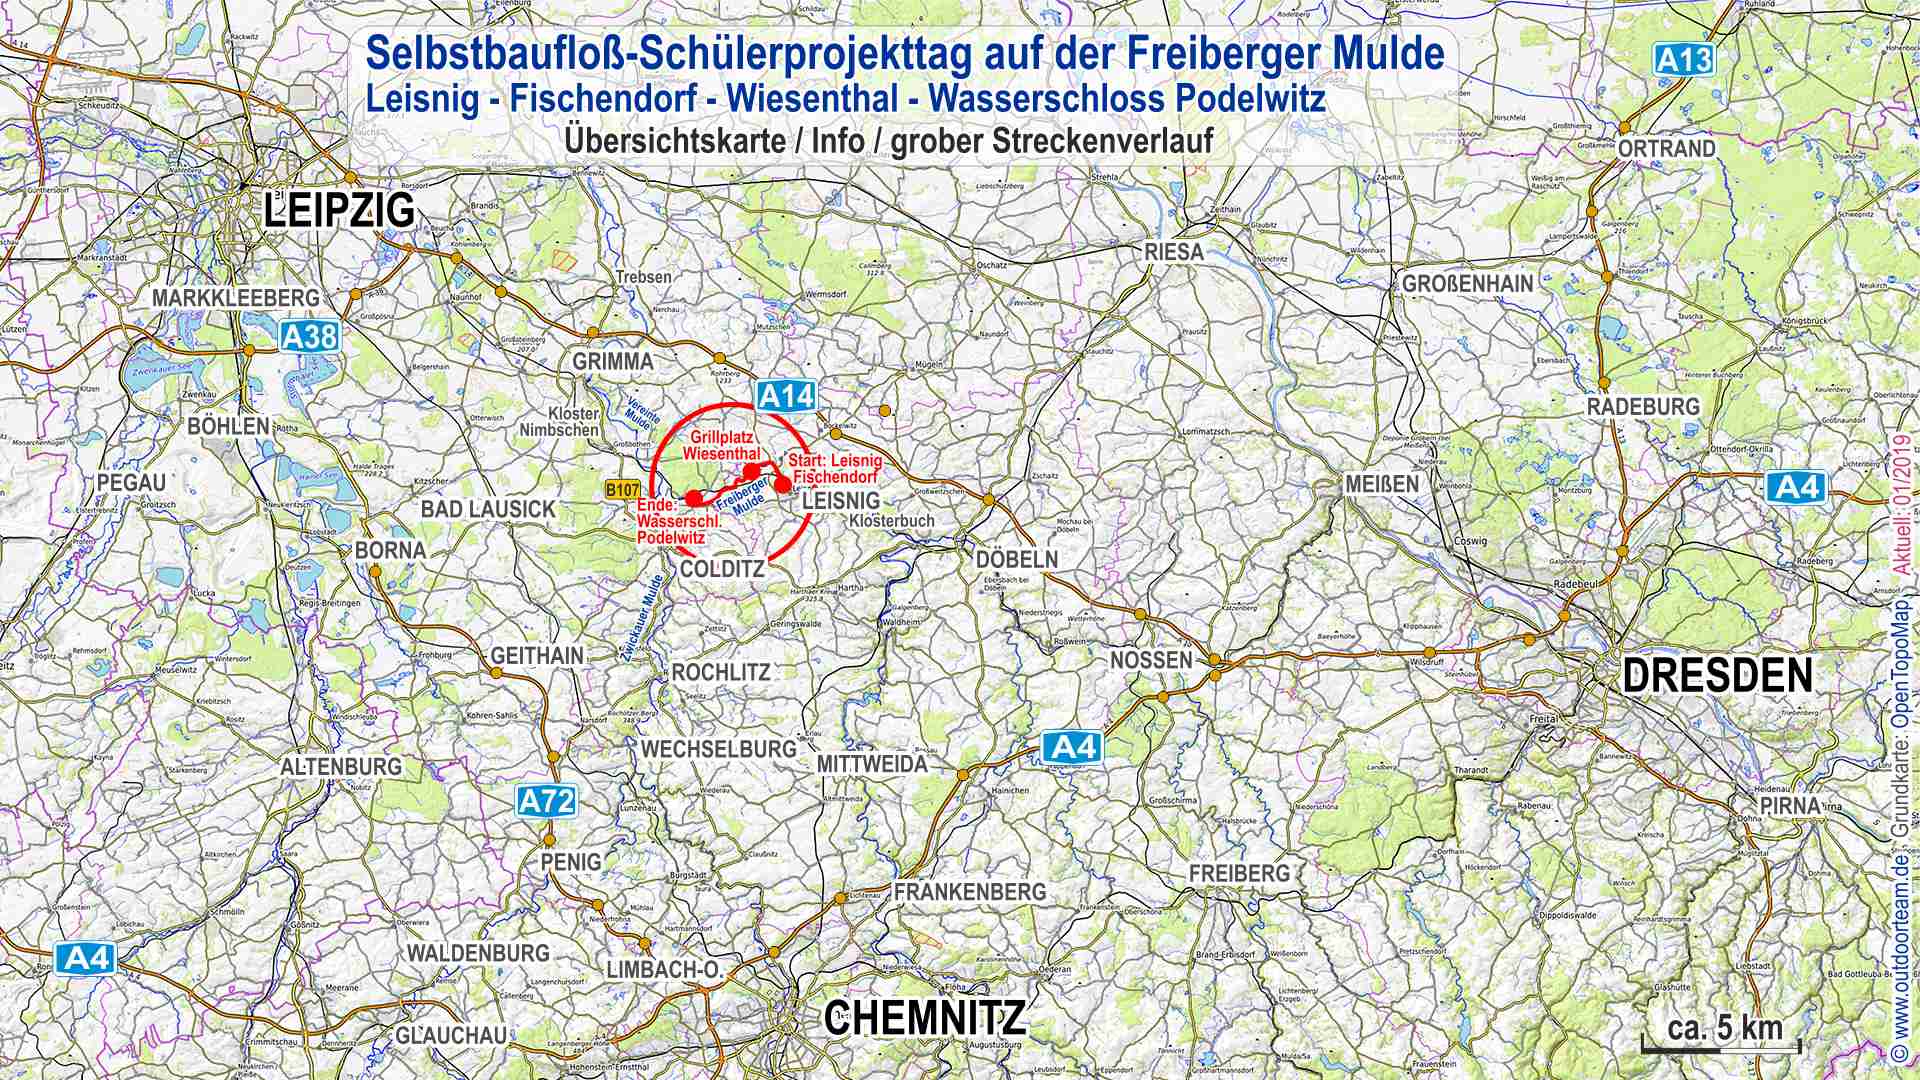 Übersichtskarte Sachsen mit markiertem Streckenverlauf  Schüler-Projekttag Selbstbaufloß auf der Freiberger Mulde.